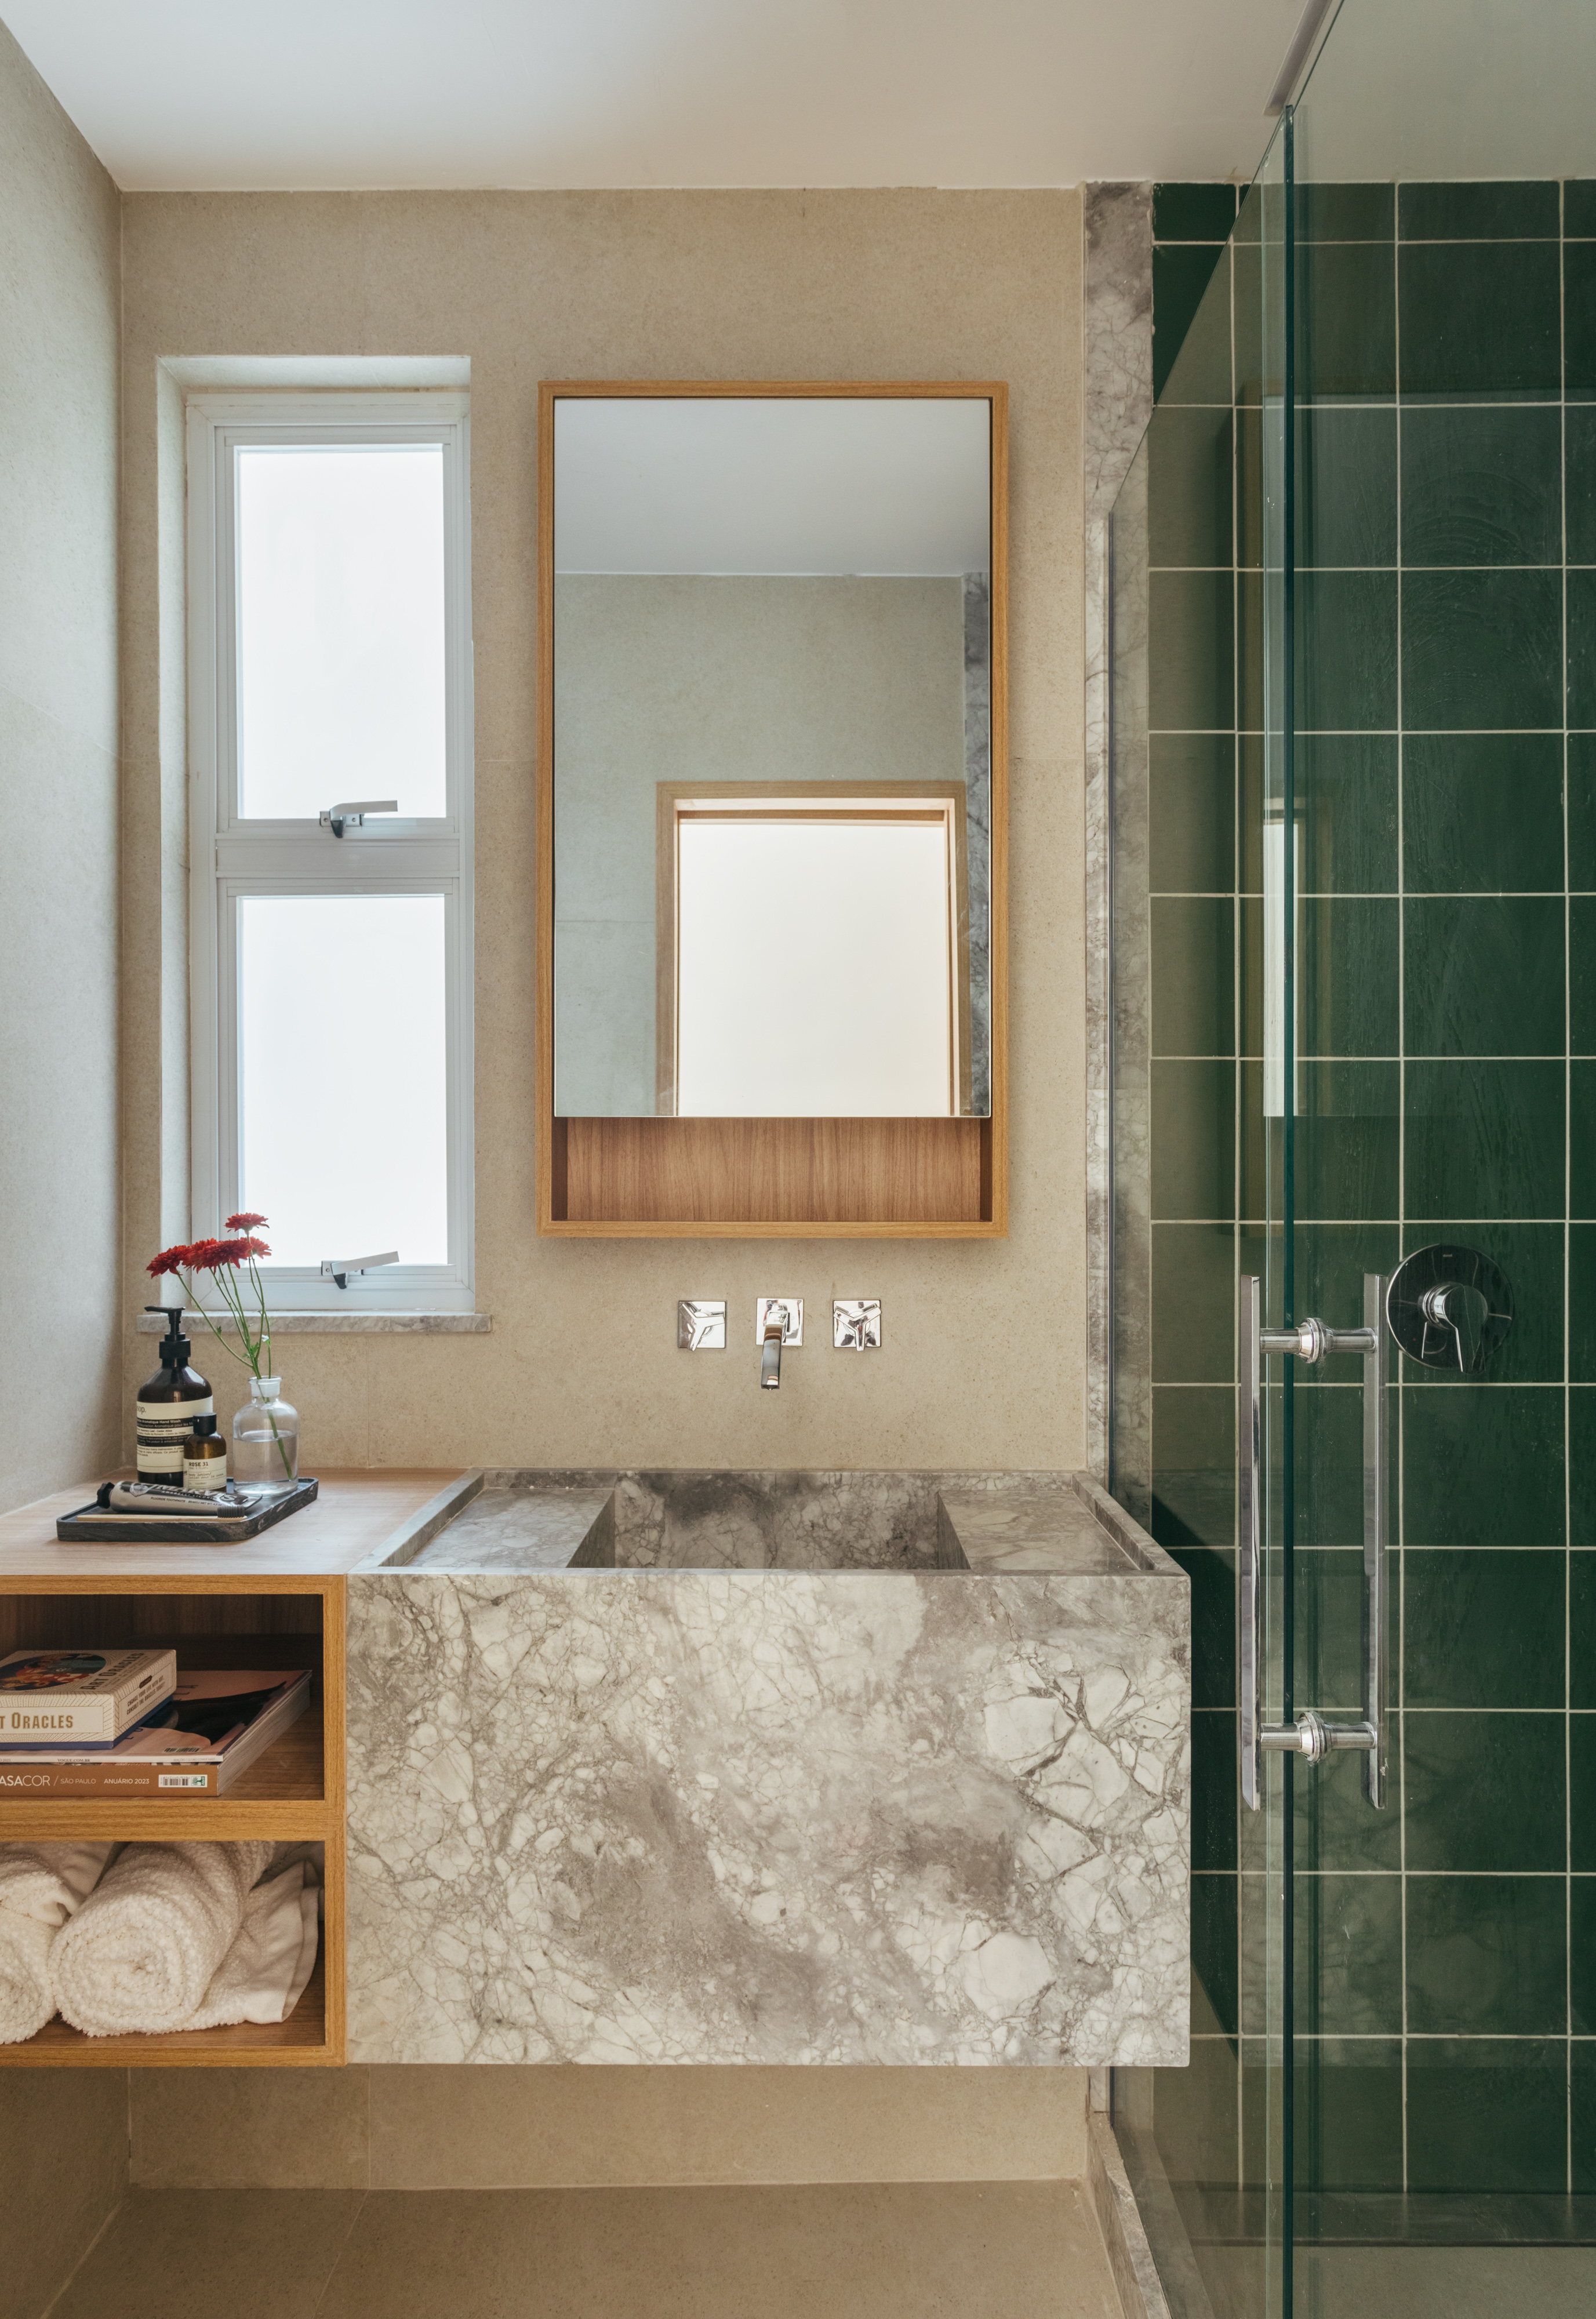 Projeto de Rodolfo Consoli. Na foto, banheiro pequeno com cuba esculpida e box revestido de azulejos verdes.